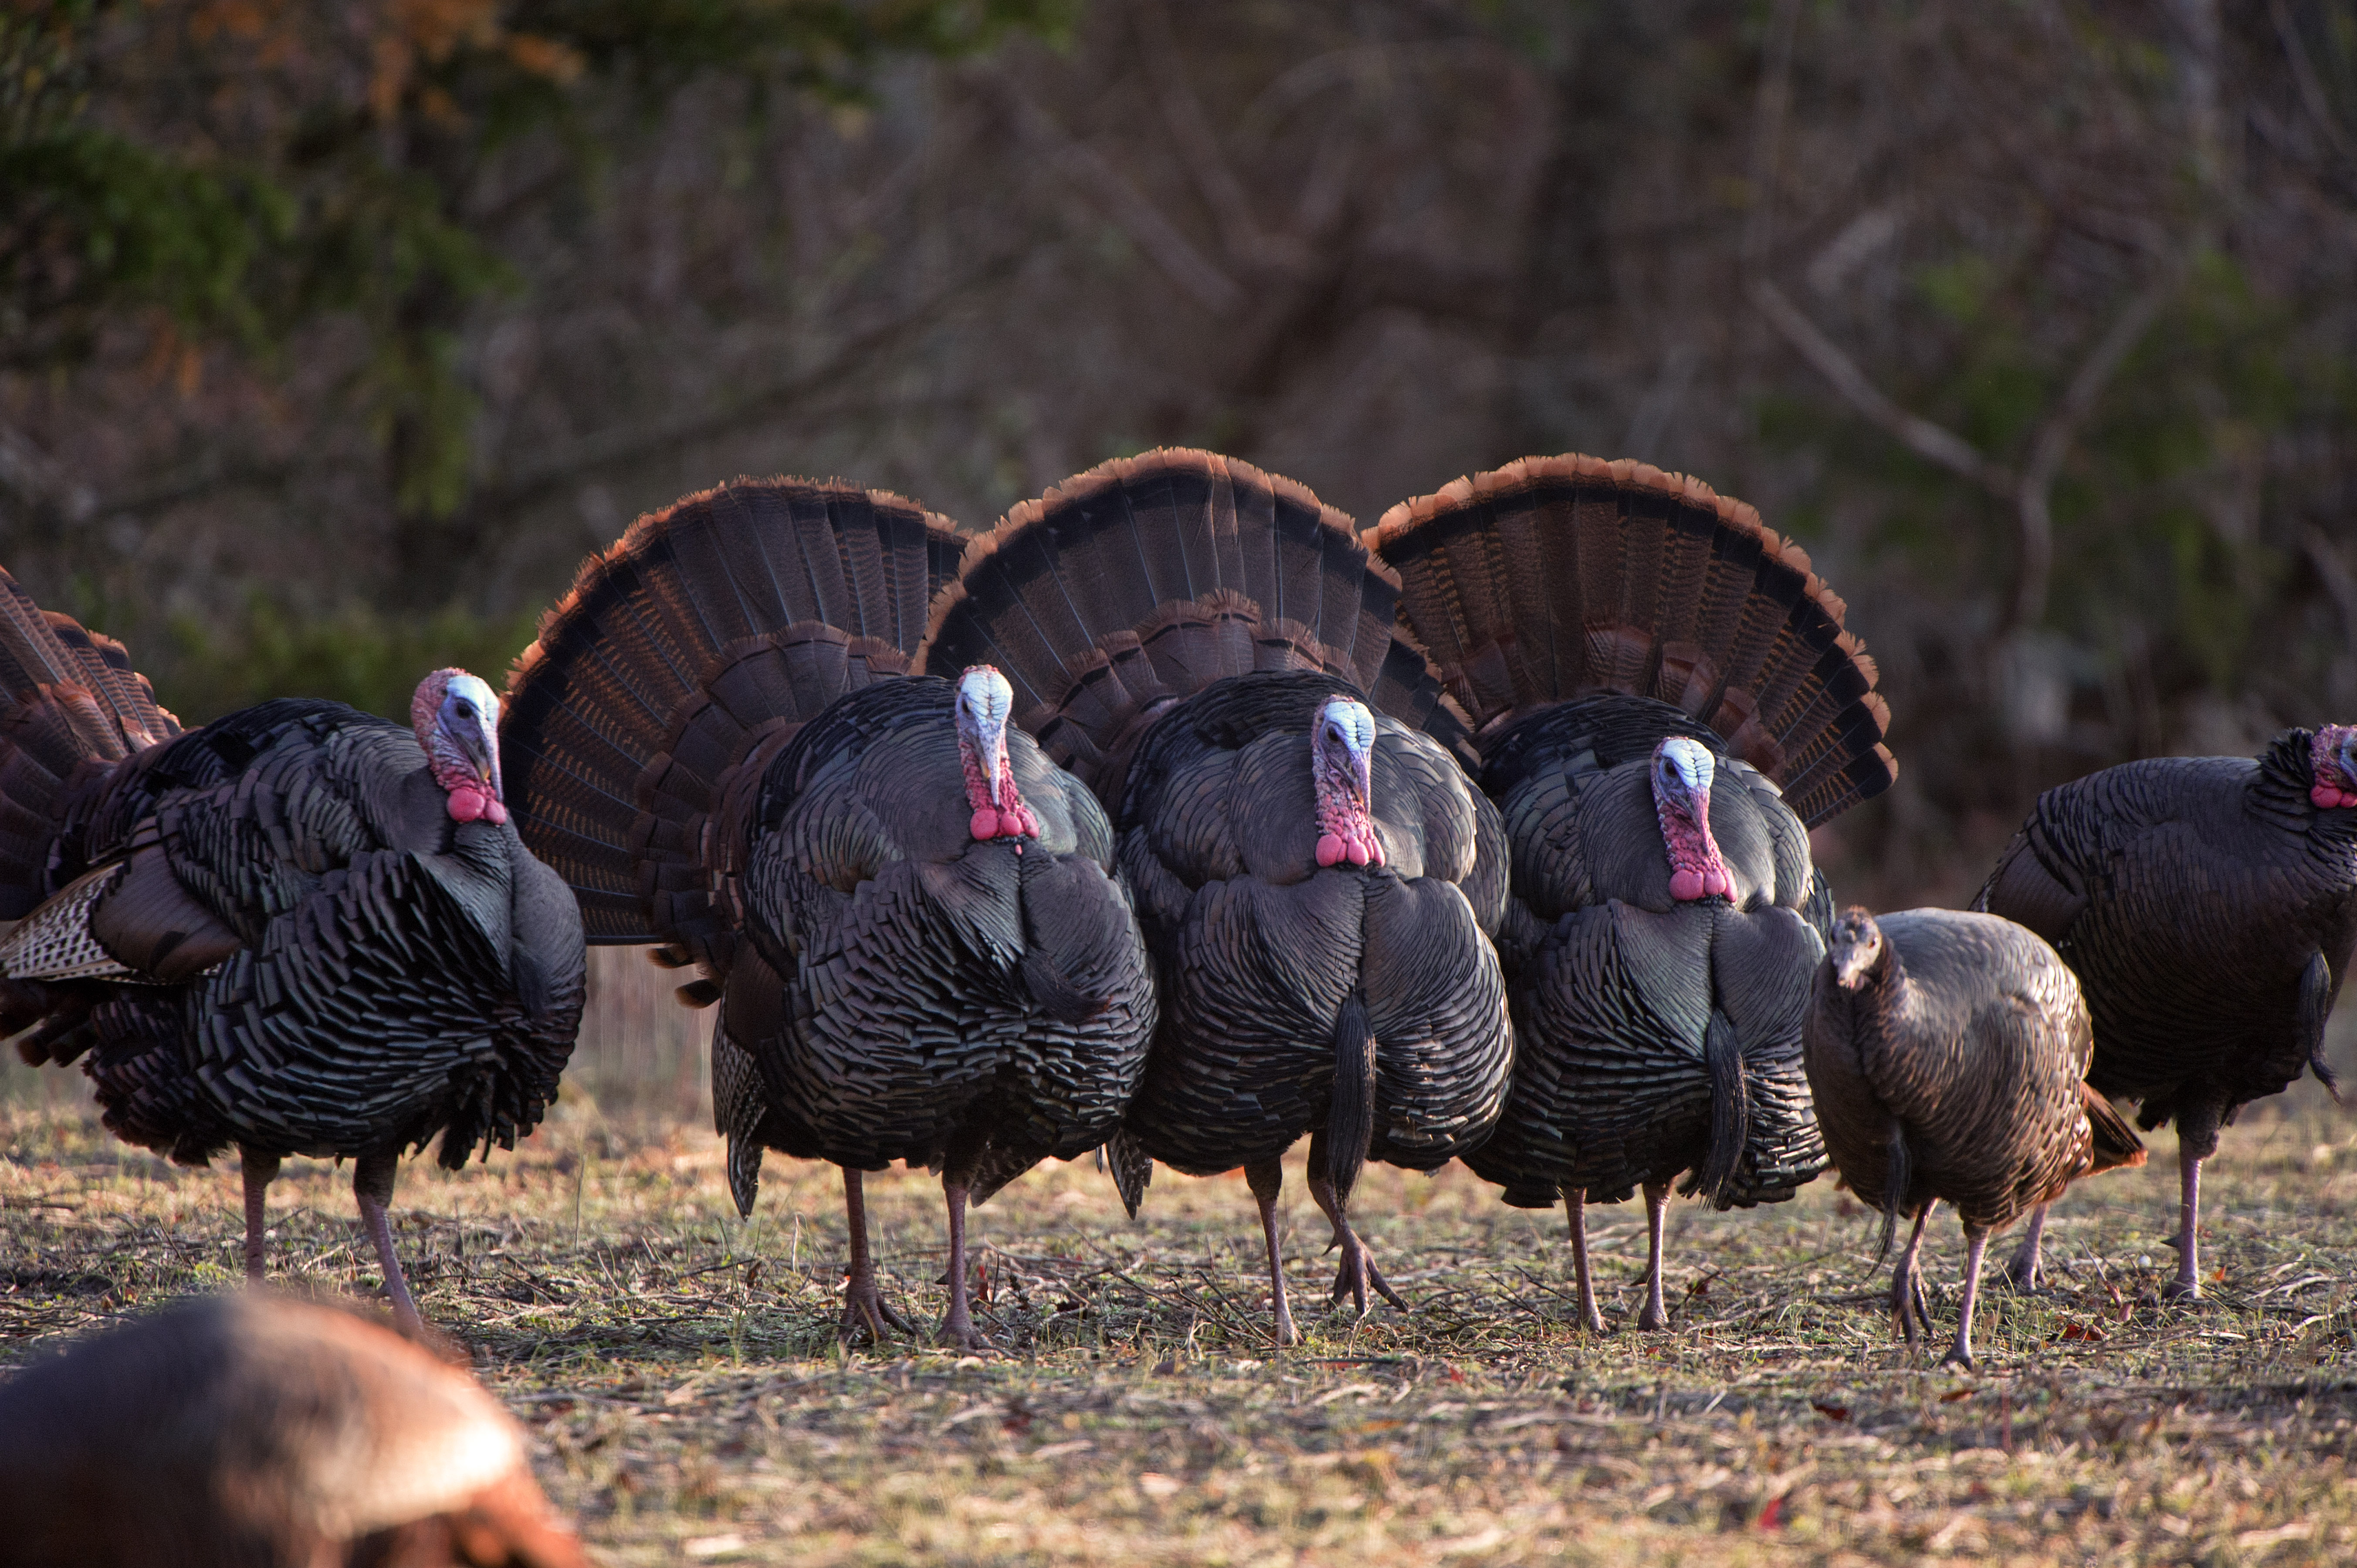 Turkey Hunting Season Tips For A Safe Rewarding Trip